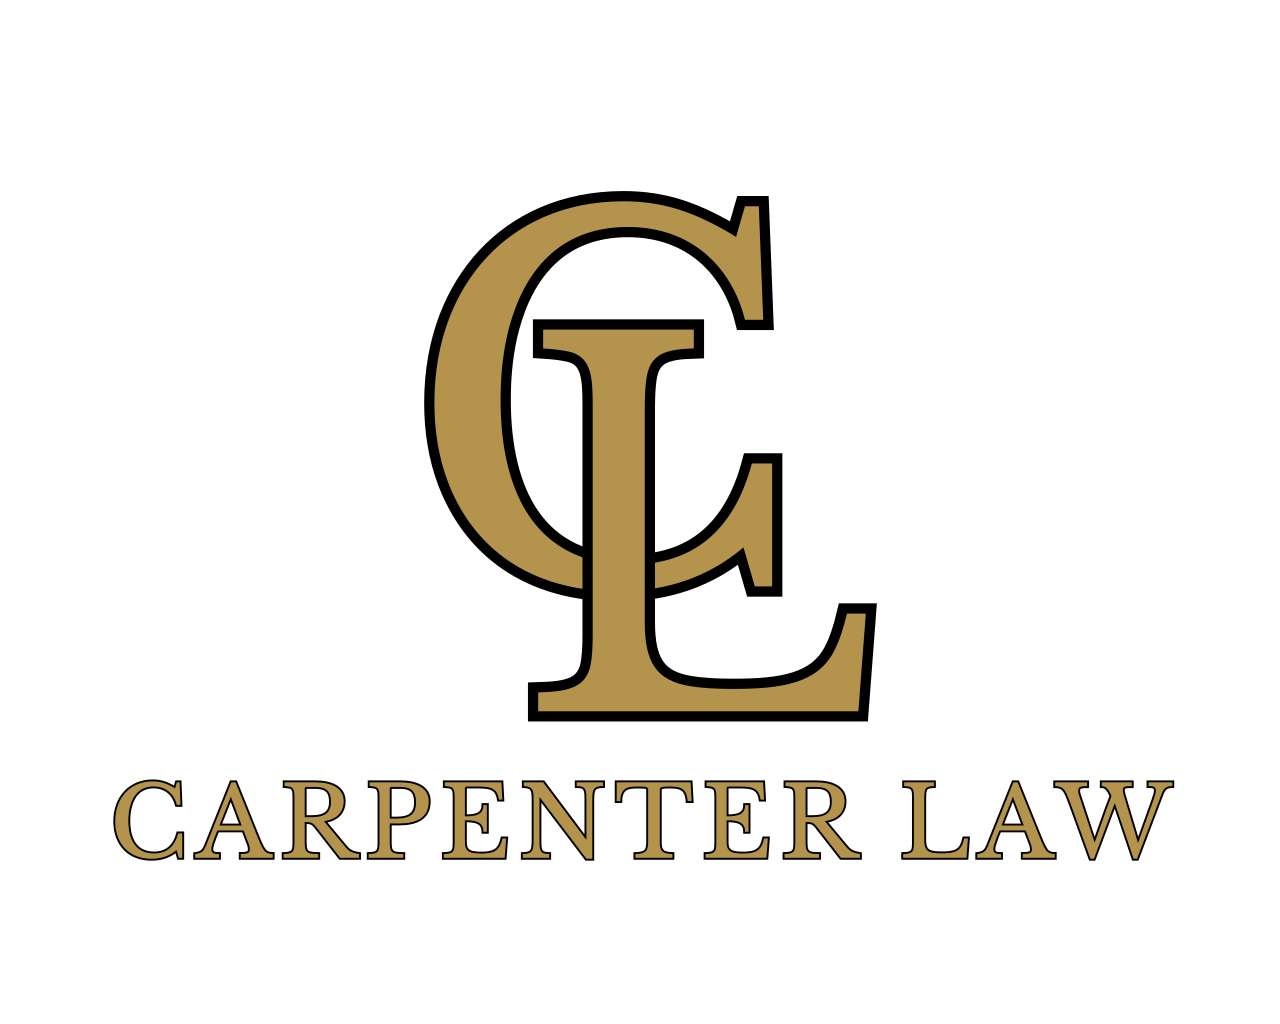 CARPENTER LAW 